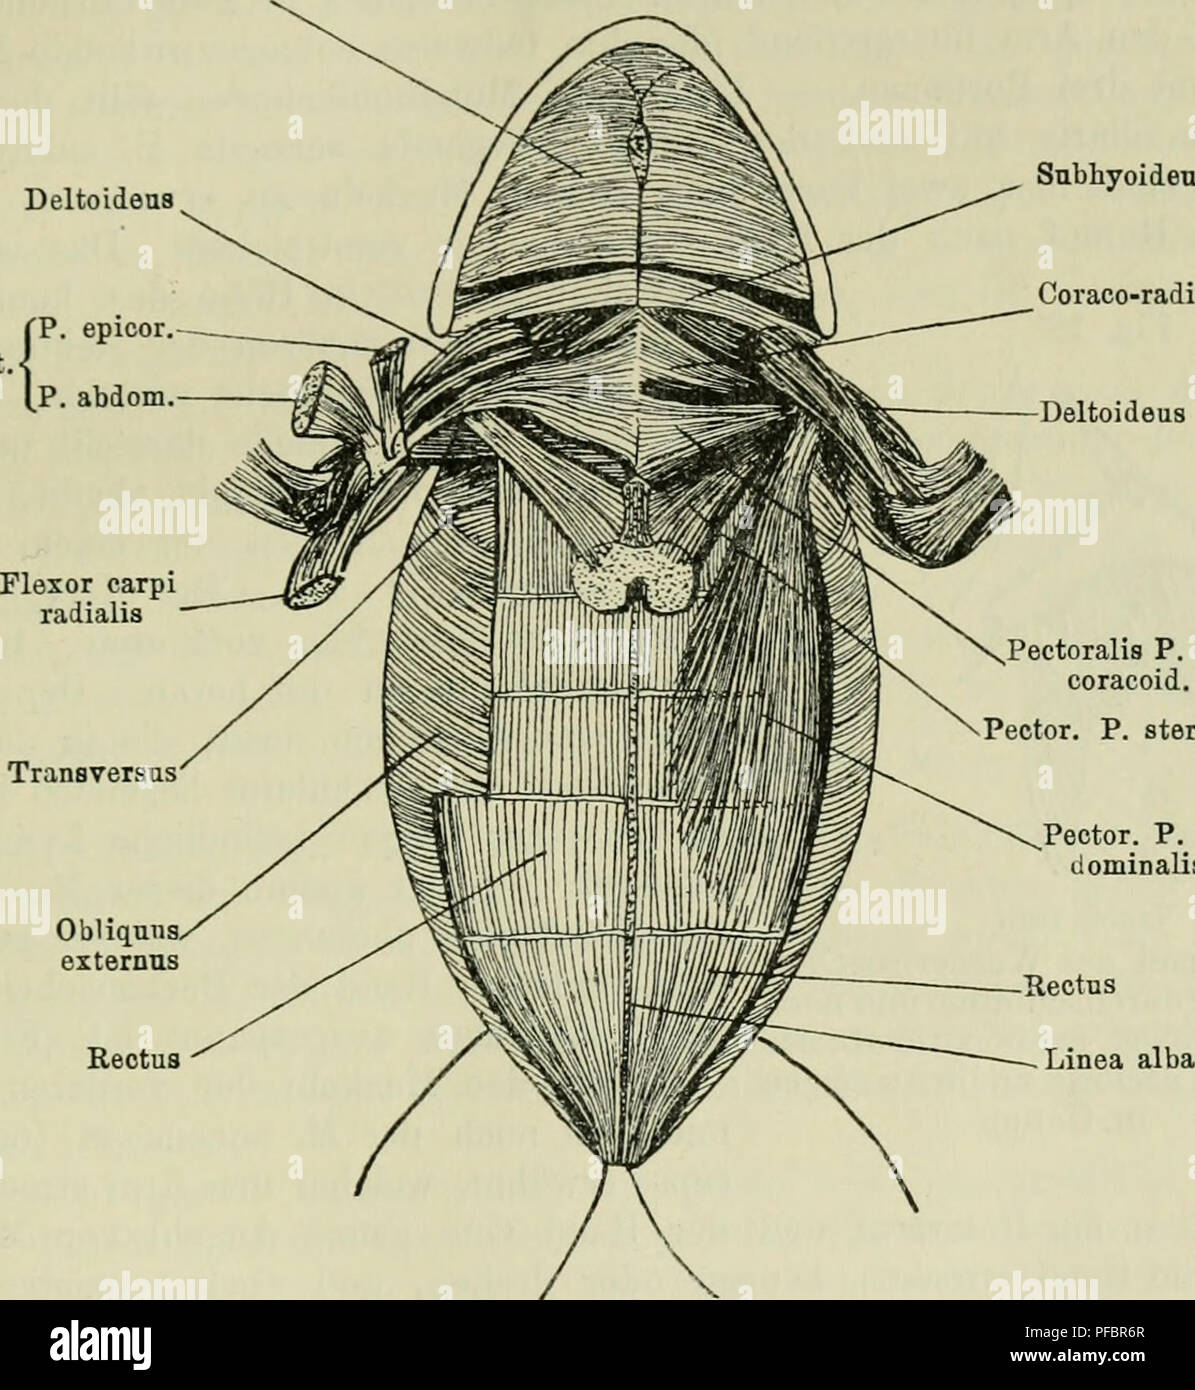 . Der Frosch; zugleich eine Einf in das praktische Studium des Wirbeltier-Krs. Frogs. — 25 M. pyriformis, vor allem aber der Glulaeus magnus und der Tensor fasciae latae, welche zusammen mit dem M. cruralis die drei Köpfe eines langen Oberschenkelmuskels, des M. triceps femoris ausmachen. Die Bauchseite des Frosches zeigt ein wesentlich anderes Bild als der Rücken (Fig 11). In der Mittellinie teilt ein bindegewebiges Band, die Linea alba, die Muskulatur in zwei symmetrische Hälften. Durch diese Lmea Submaxillaris Fig. 11. Deltoidens Pect Snbhyoideus Coraco-radialis Deltoideus. Obliquiisx exter Stock Photo